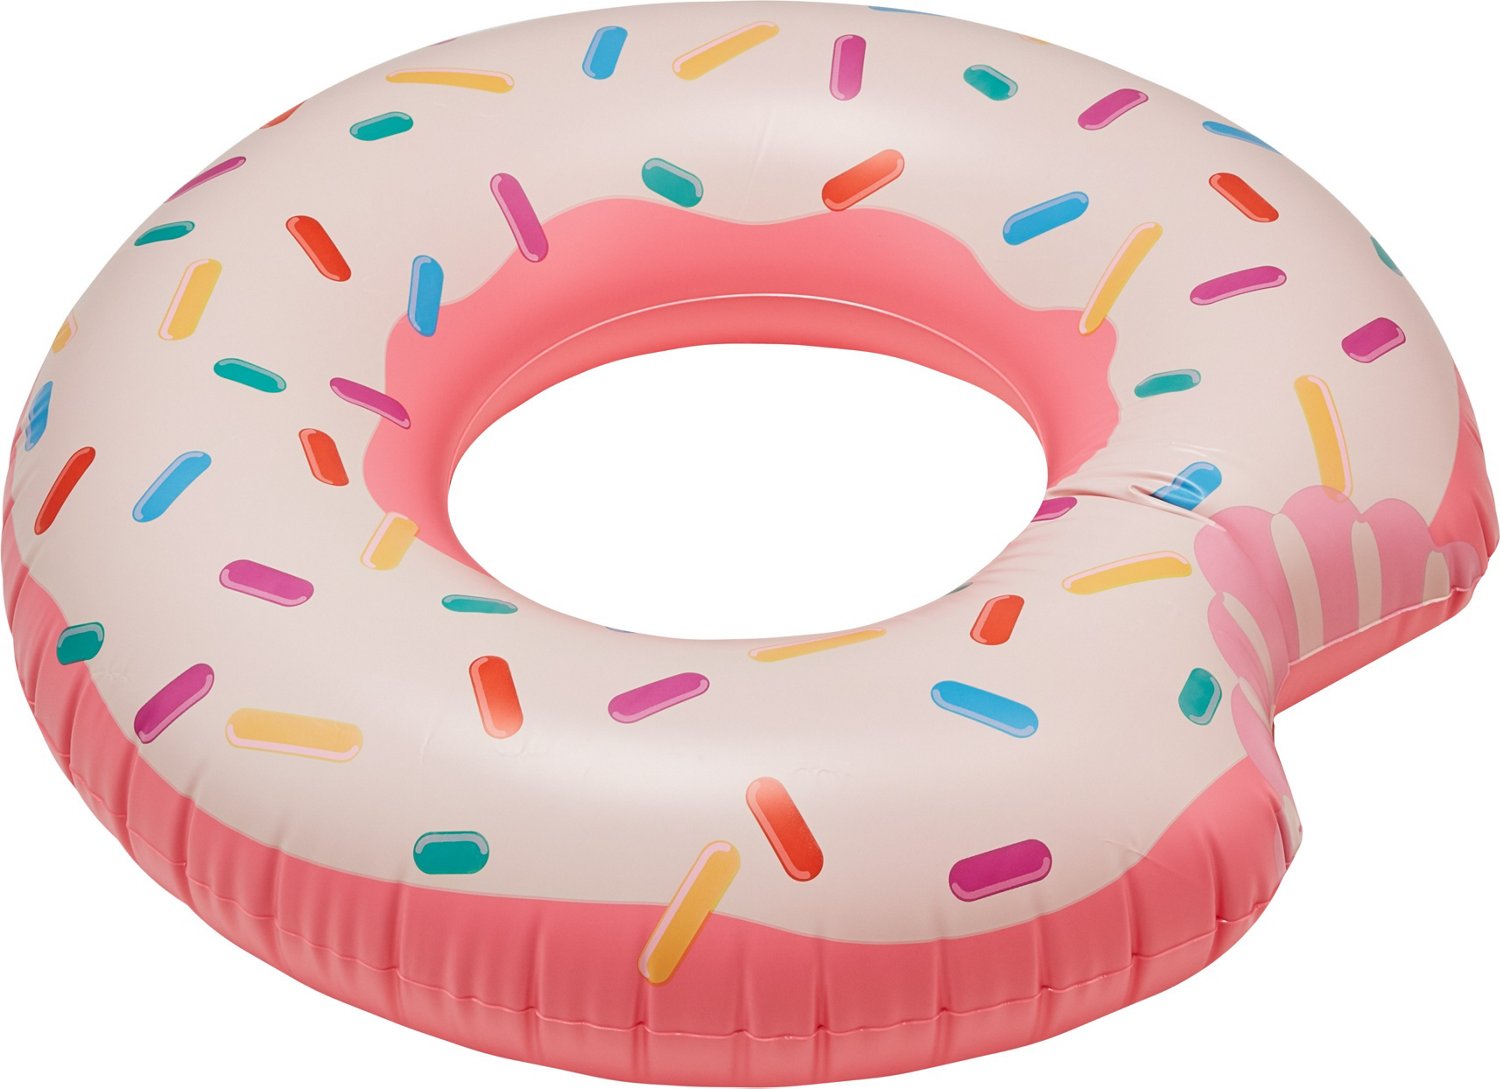 INTEX Rainbow Donut Pool Tube | Academy